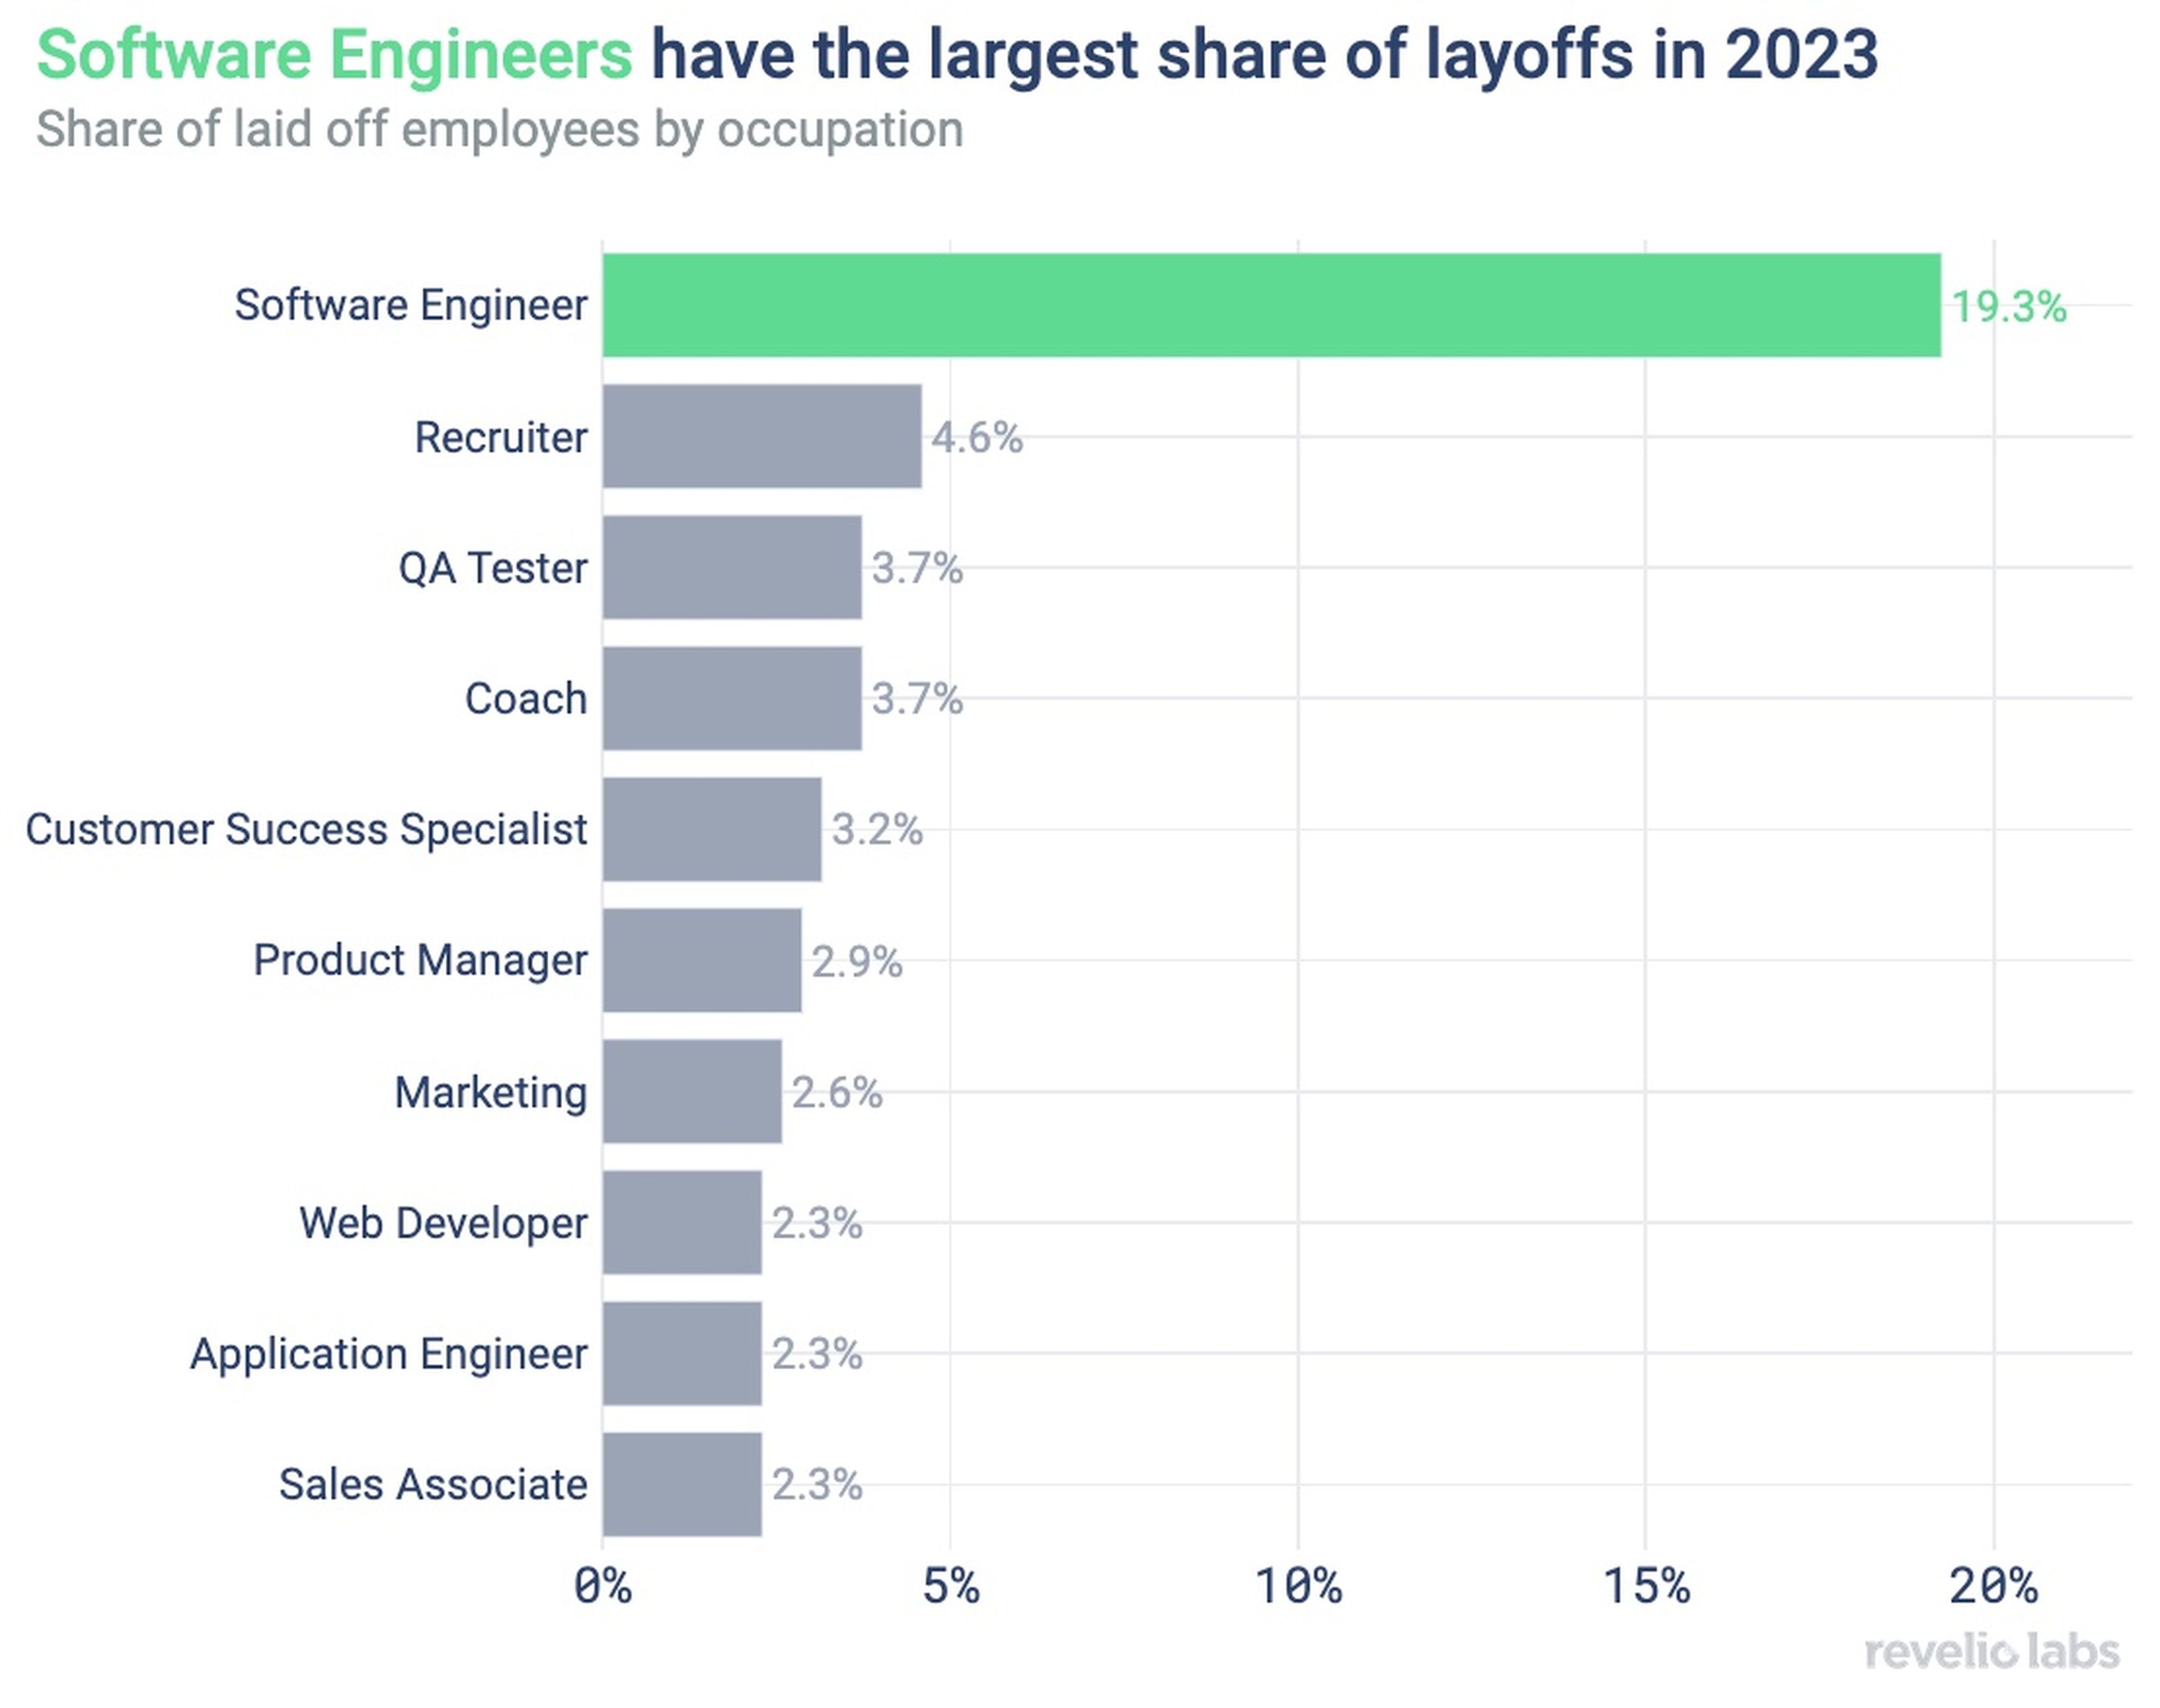 Los ingenieros de software representan casi el 20% de los despidos en 2023.